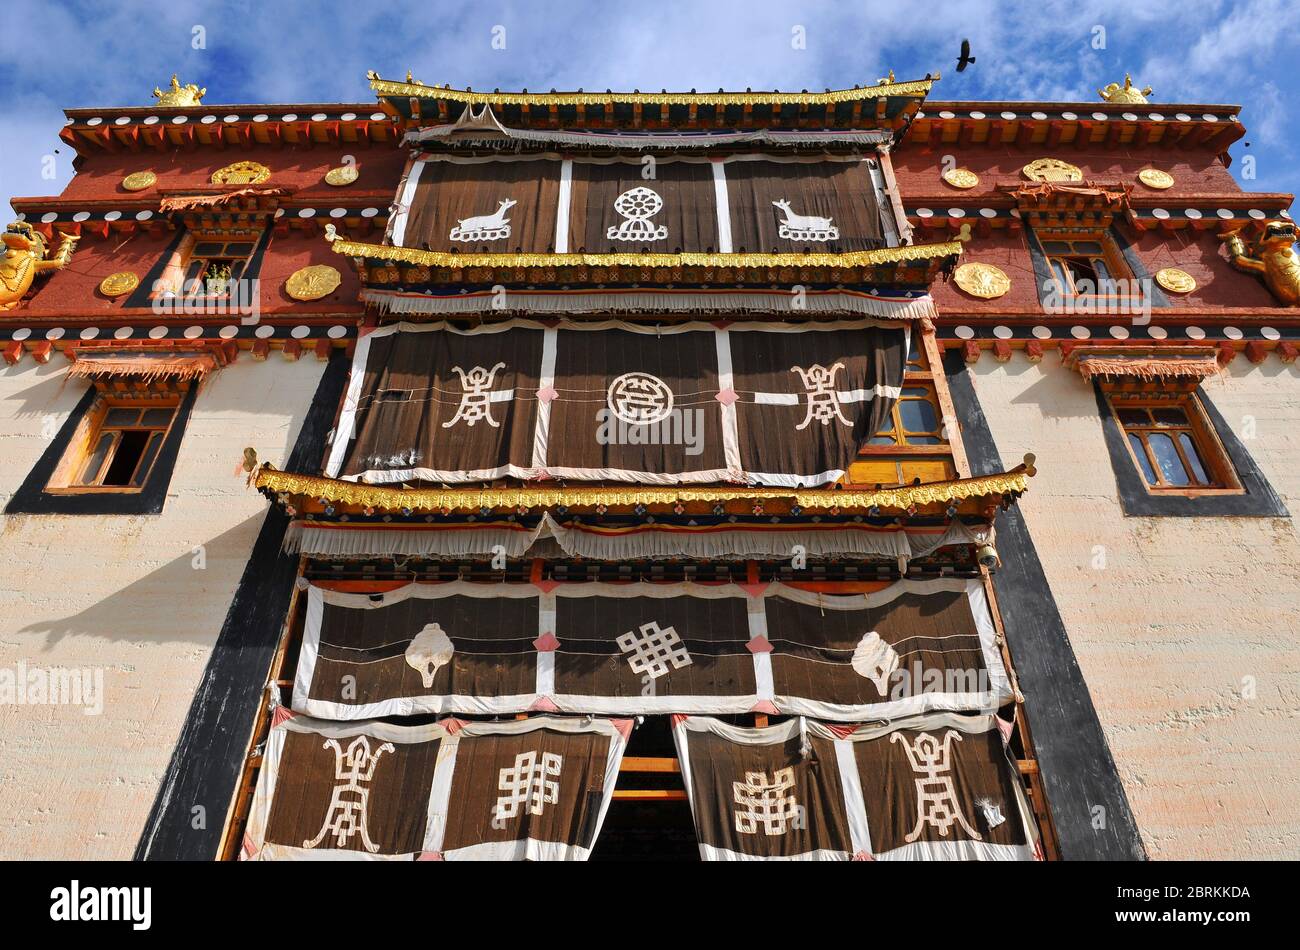 Ein Gebäude mit tibetisch-buddhistischen Motiven und Dekorationen im Kloster Songzanlin, Shangri La oder Zhongdian, Yunnan, China. Stockfoto